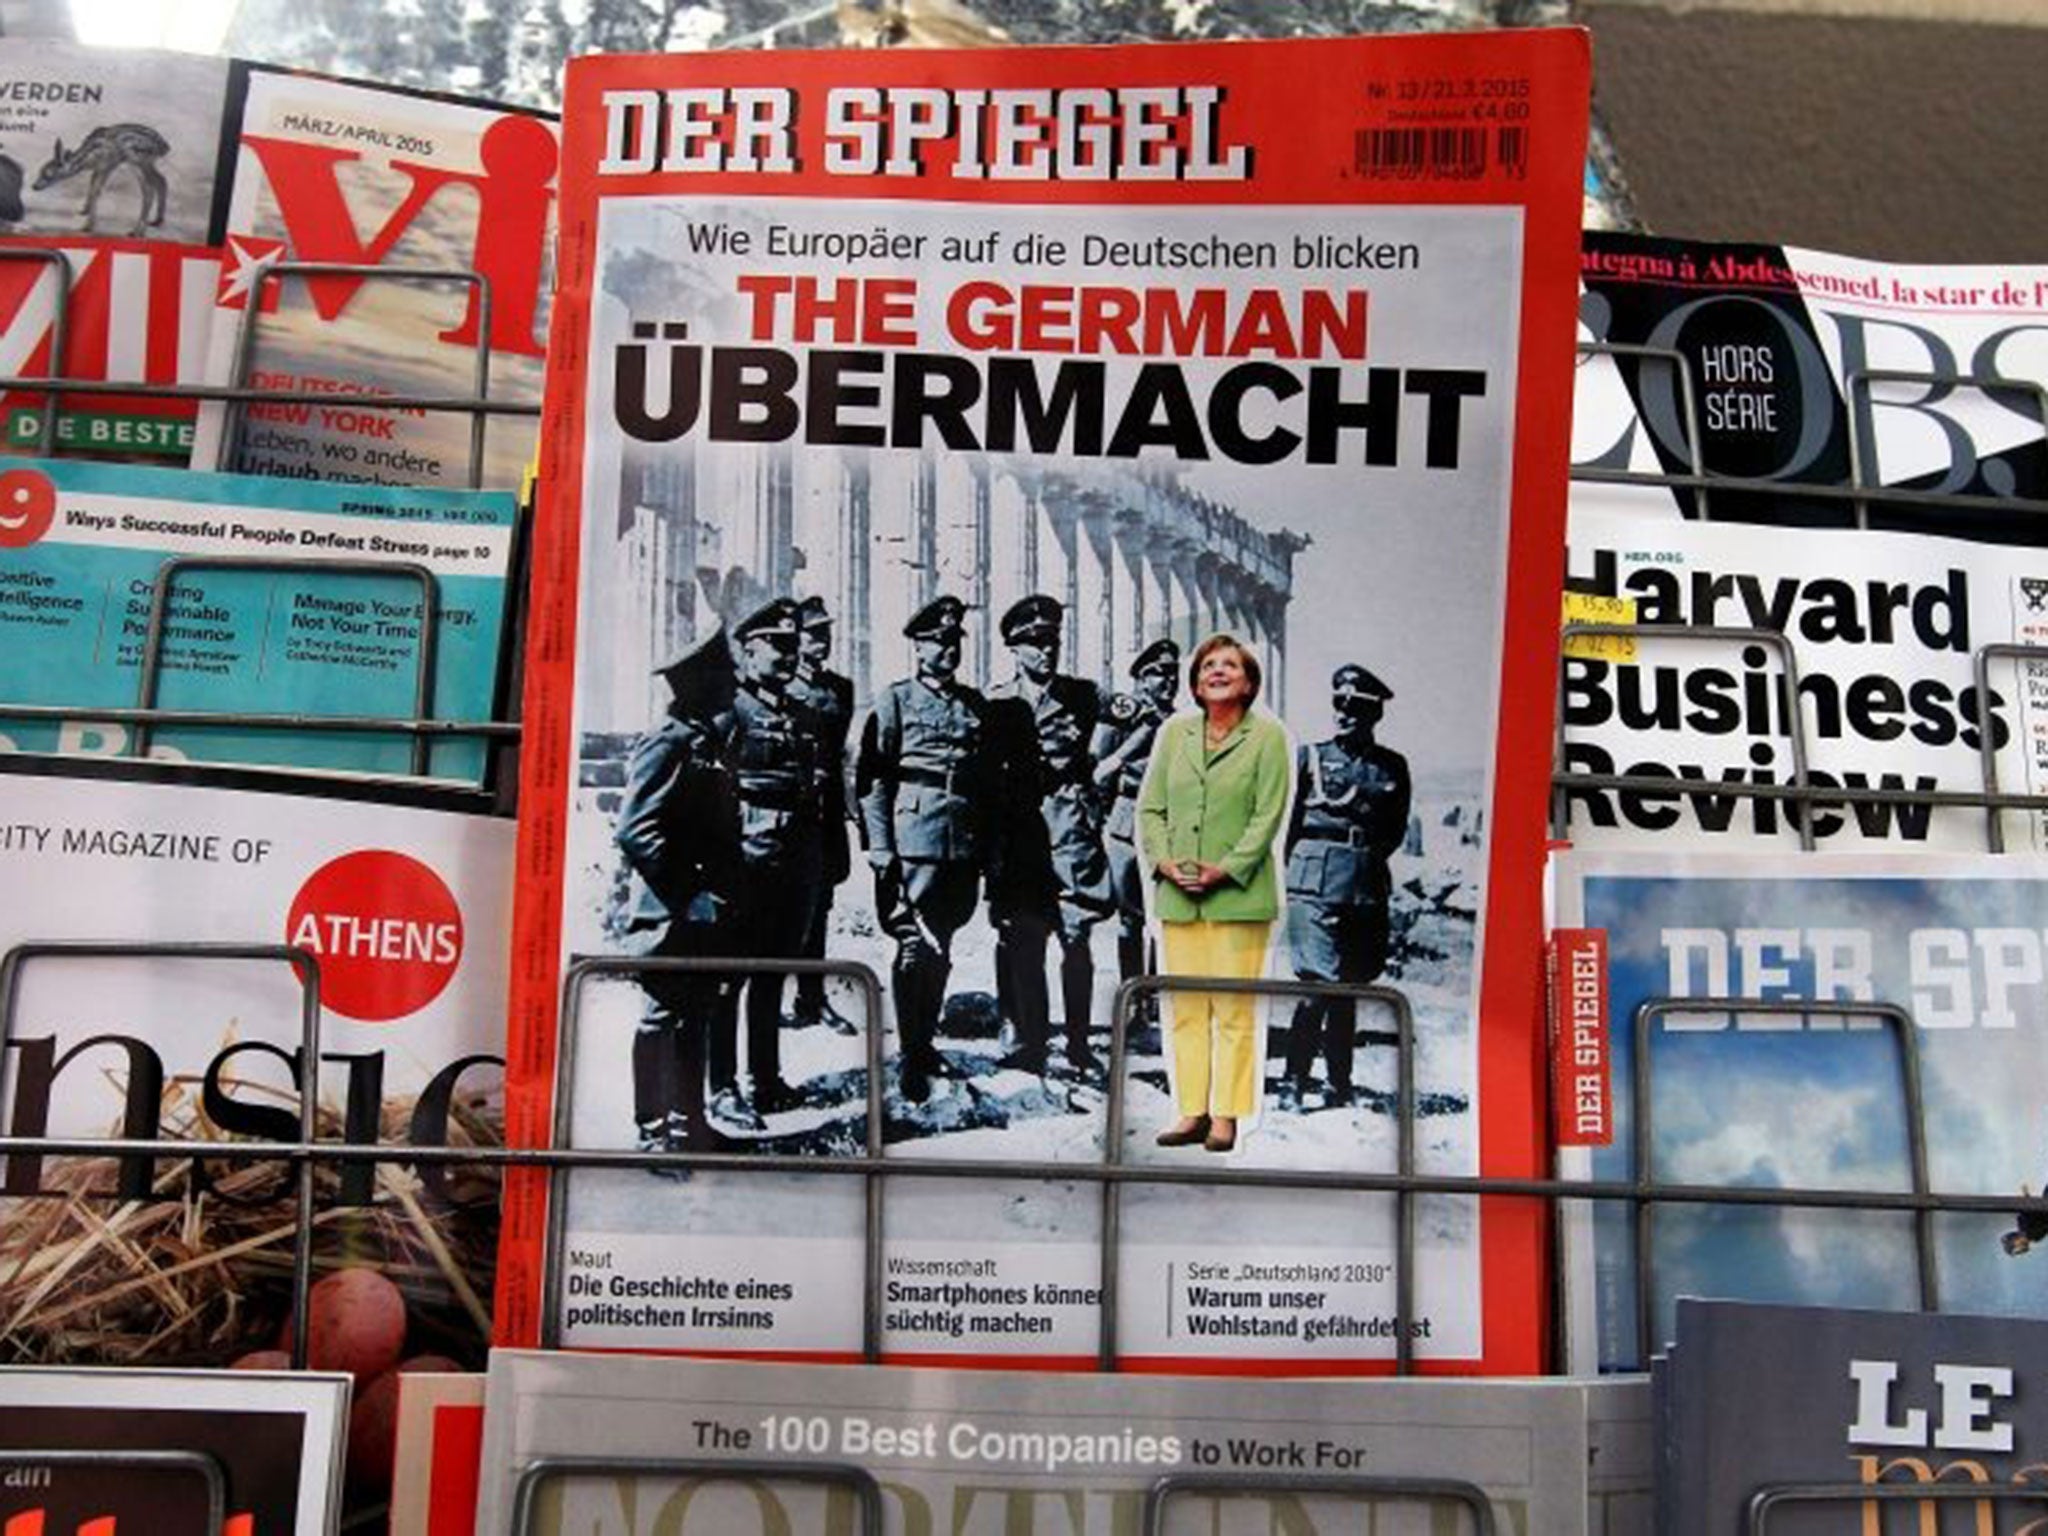 Der Spiegel on sale at a kiosk in Athens, Greece